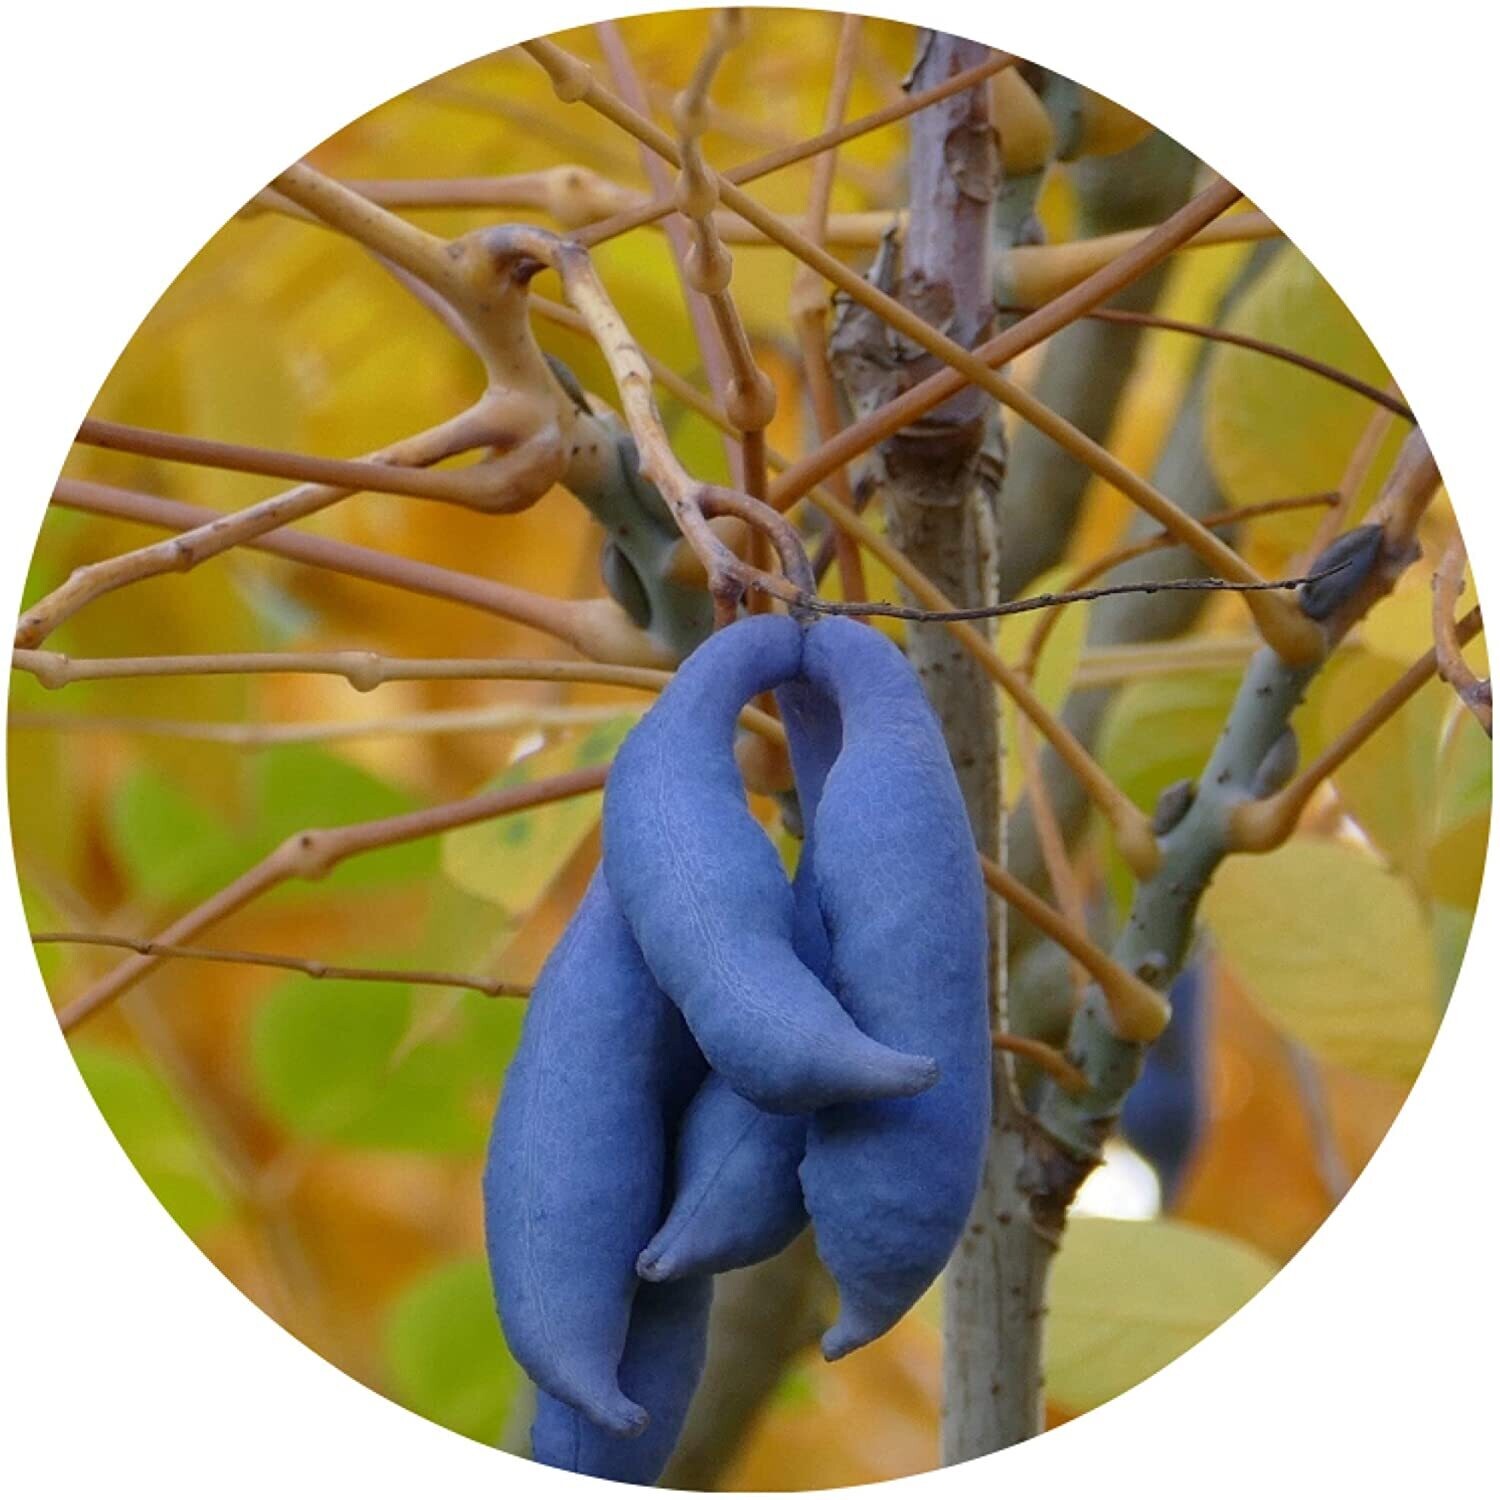 Blaugurkenbaum / Decaisnea fargesii / 10 Samen / Blickfang / Attraktion / blaue Gurken